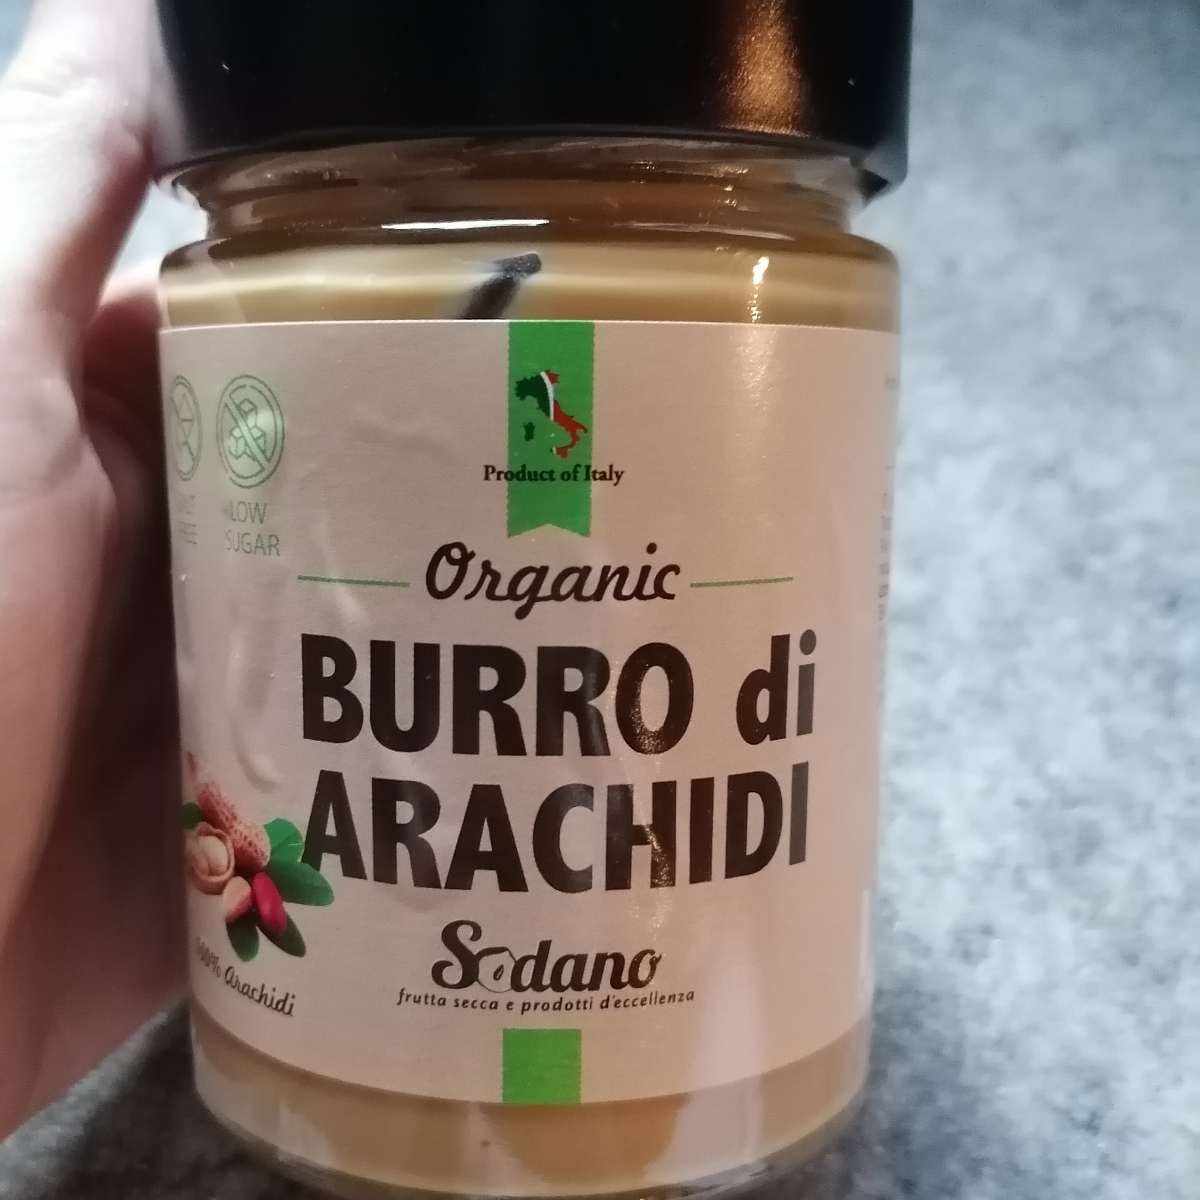 Sodano group Organic Burro di Arachidi Review | abillion